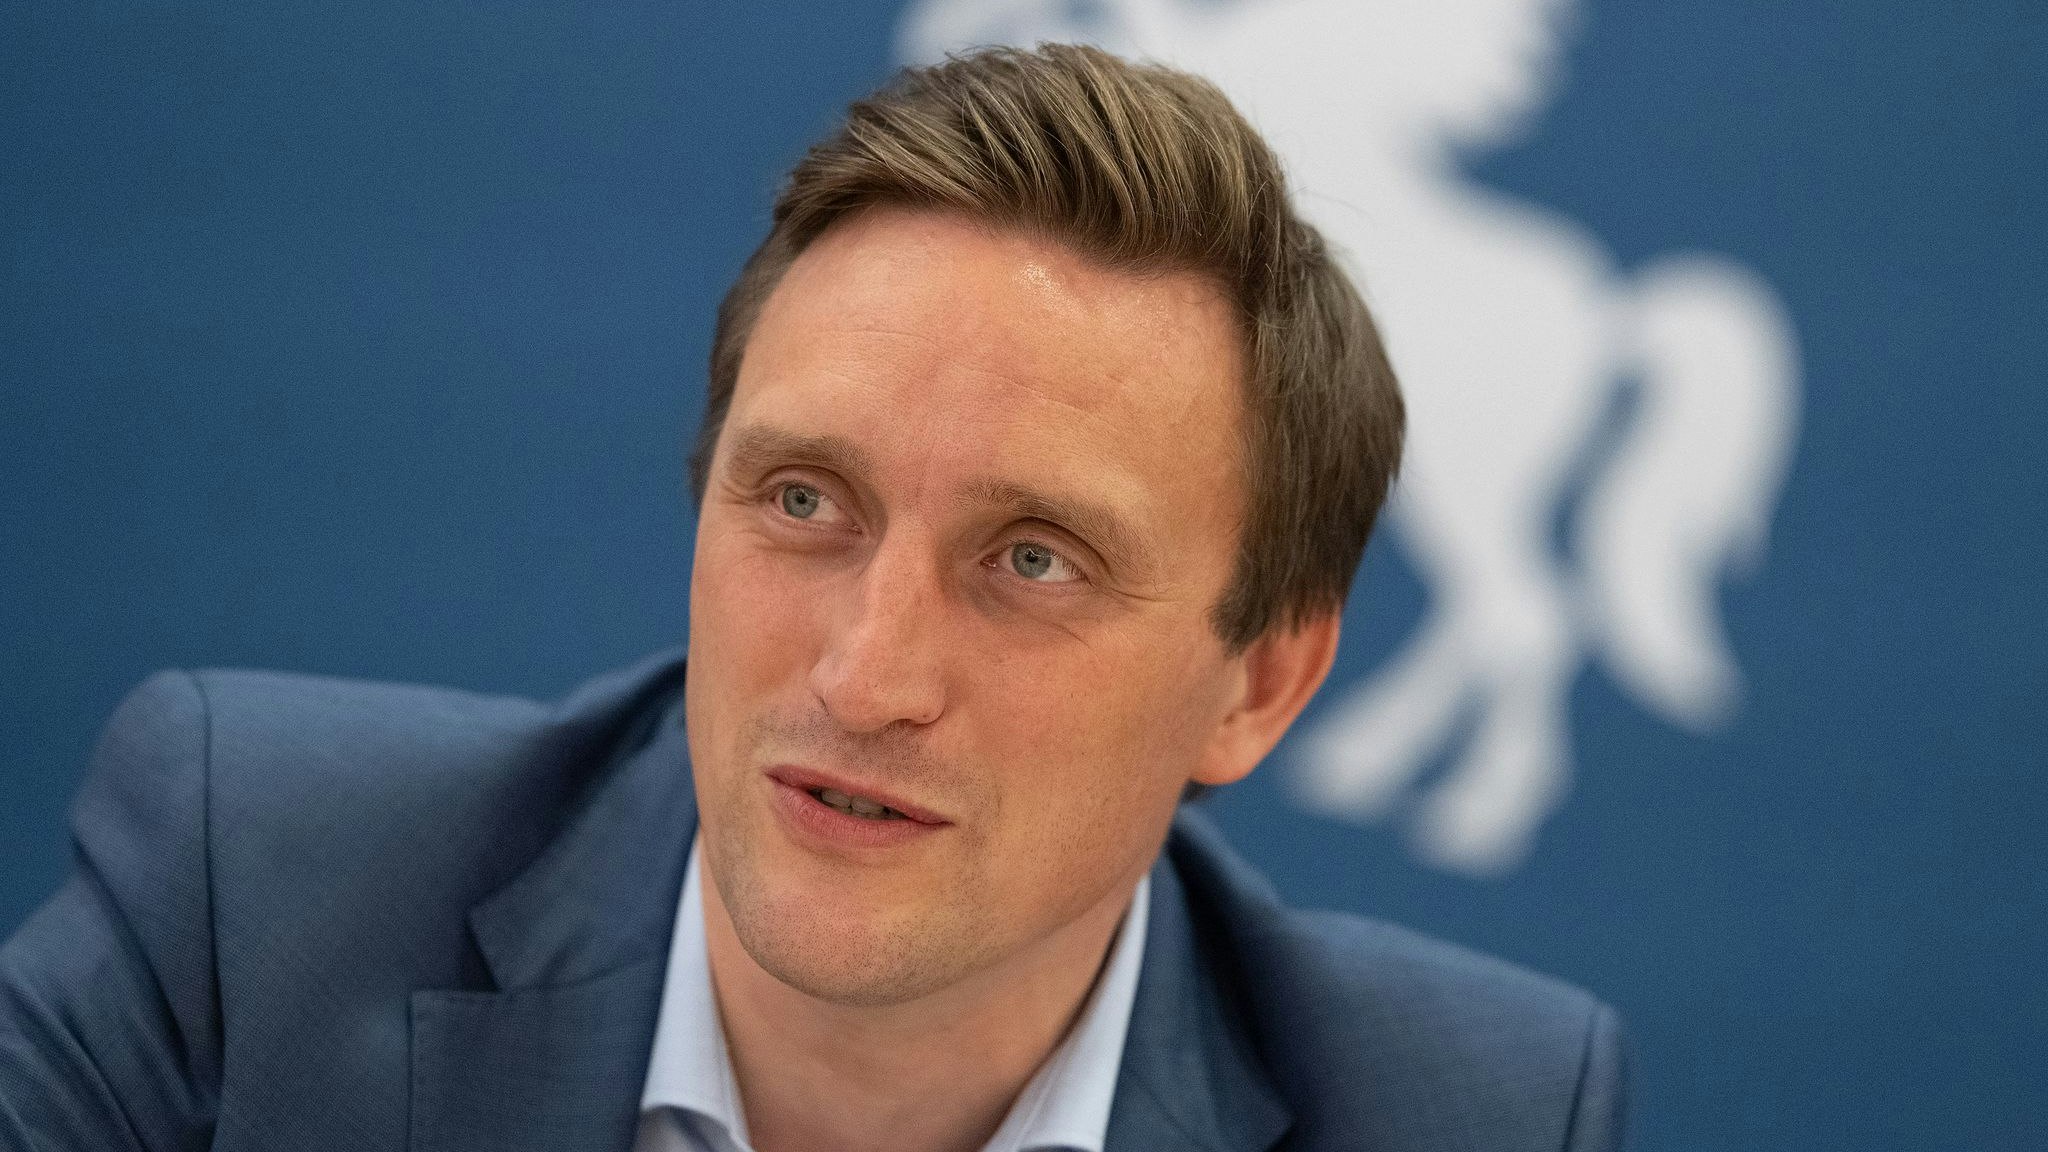 Der neue Landesvorsitzendeder CDU in Niedersachsen: Sebastian Lechner. Foto: dpa